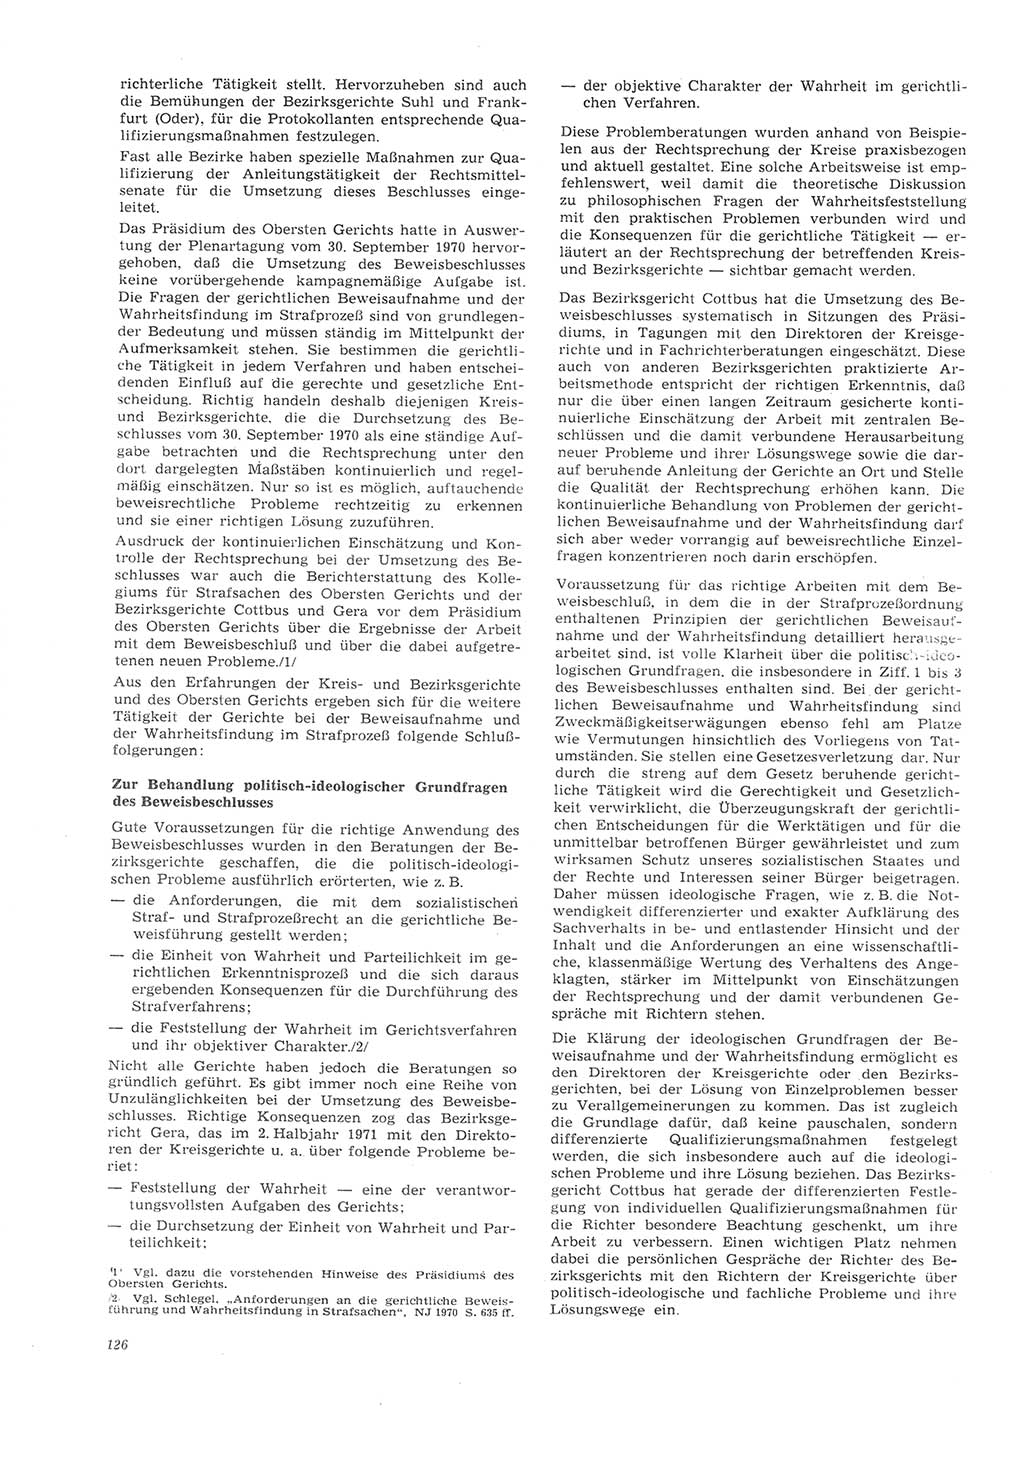 Neue Justiz (NJ), Zeitschrift für Recht und Rechtswissenschaft [Deutsche Demokratische Republik (DDR)], 26. Jahrgang 1972, Seite 126 (NJ DDR 1972, S. 126)